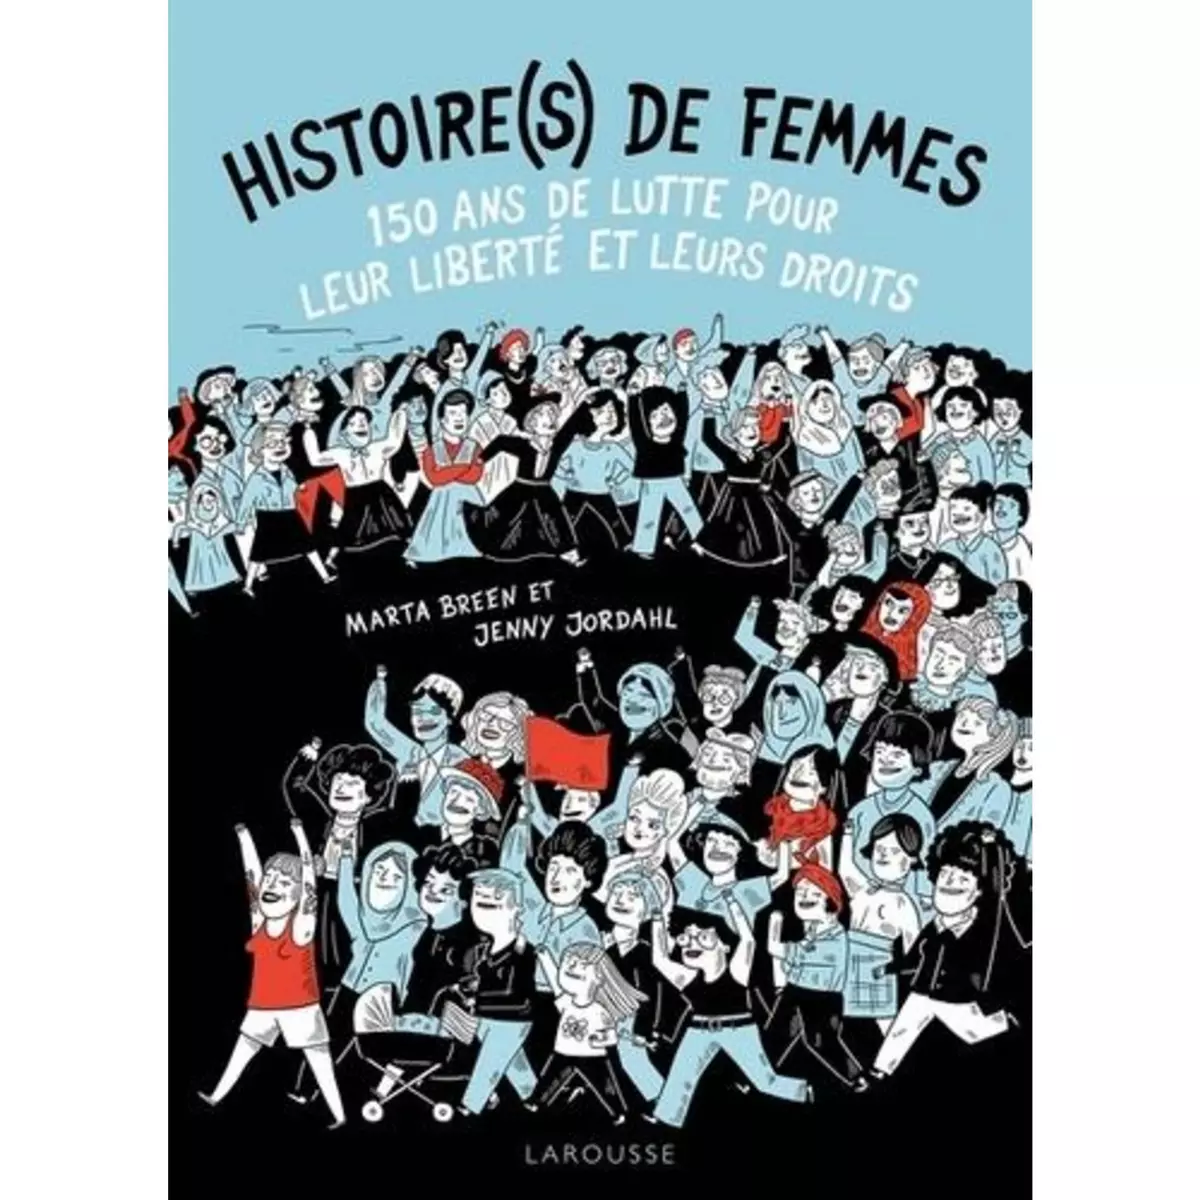  HISTOIRE(S) DE FEMMES. 150 ANS DE LUTTE POUR LEUR LIBERTE ET LEURS DROITS, Breen Marta